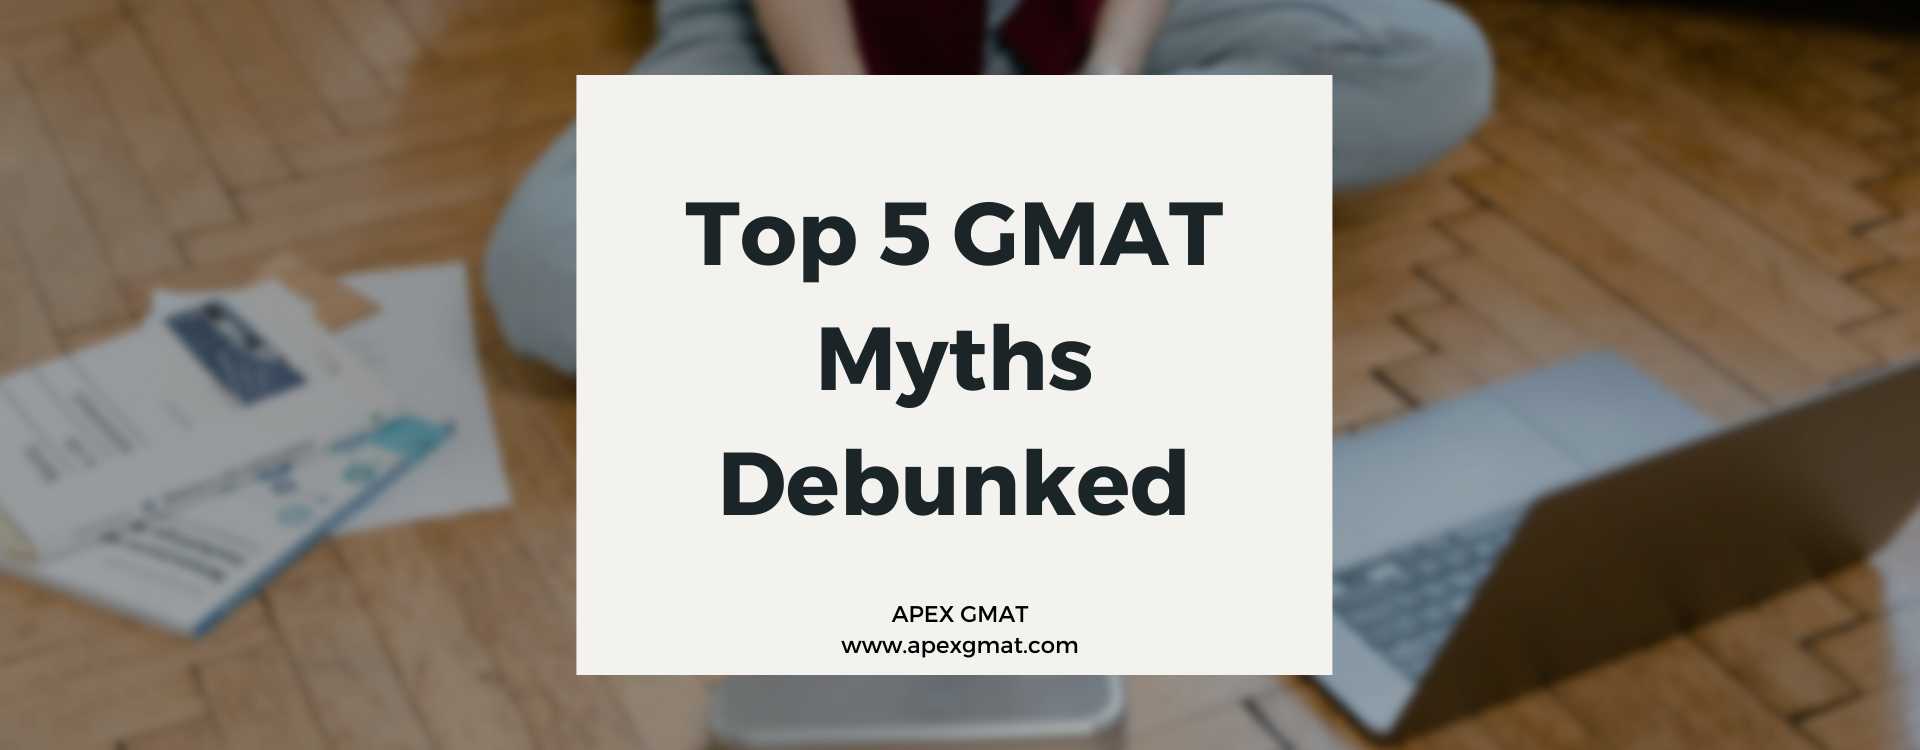 Top 5 GMAT Myths Debunked